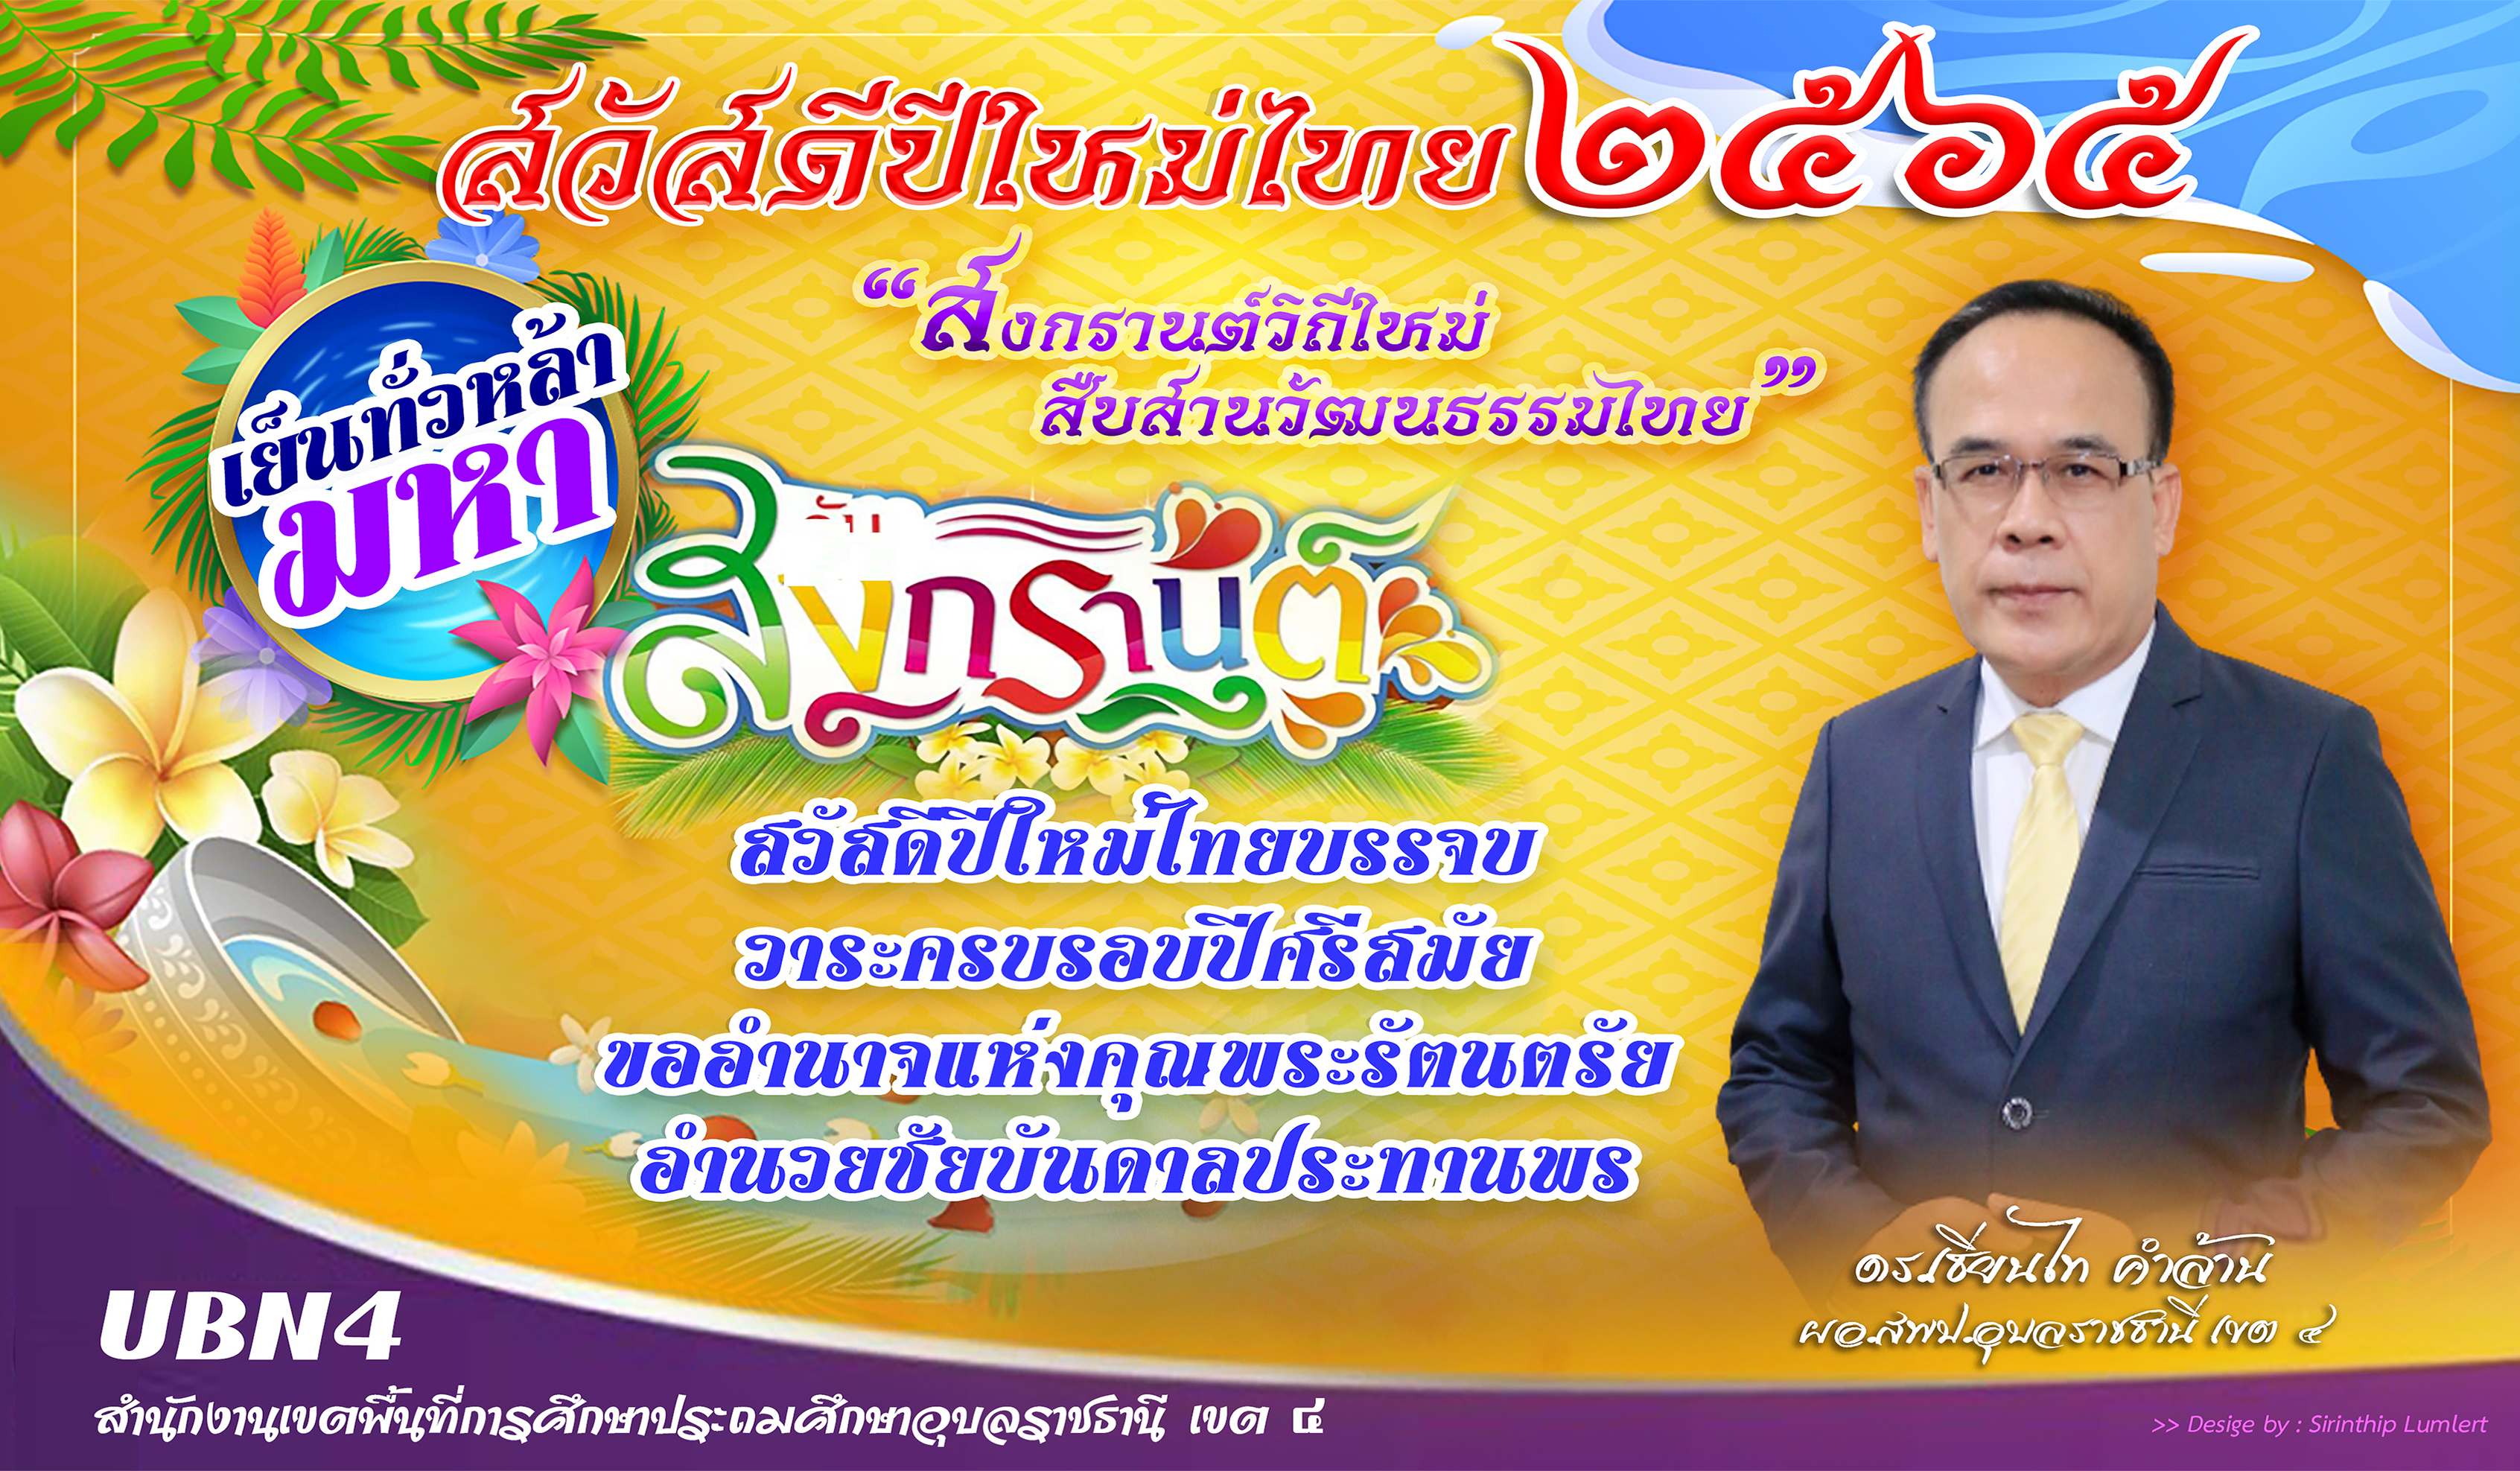 สพป.อุบลราชธานี เขต 4 ร่วมสืบสายประเพณีไทย "สงกรานต์วิถีใหม่ สืบสานวัฒนธรรมไทย" ประจำปี 2565